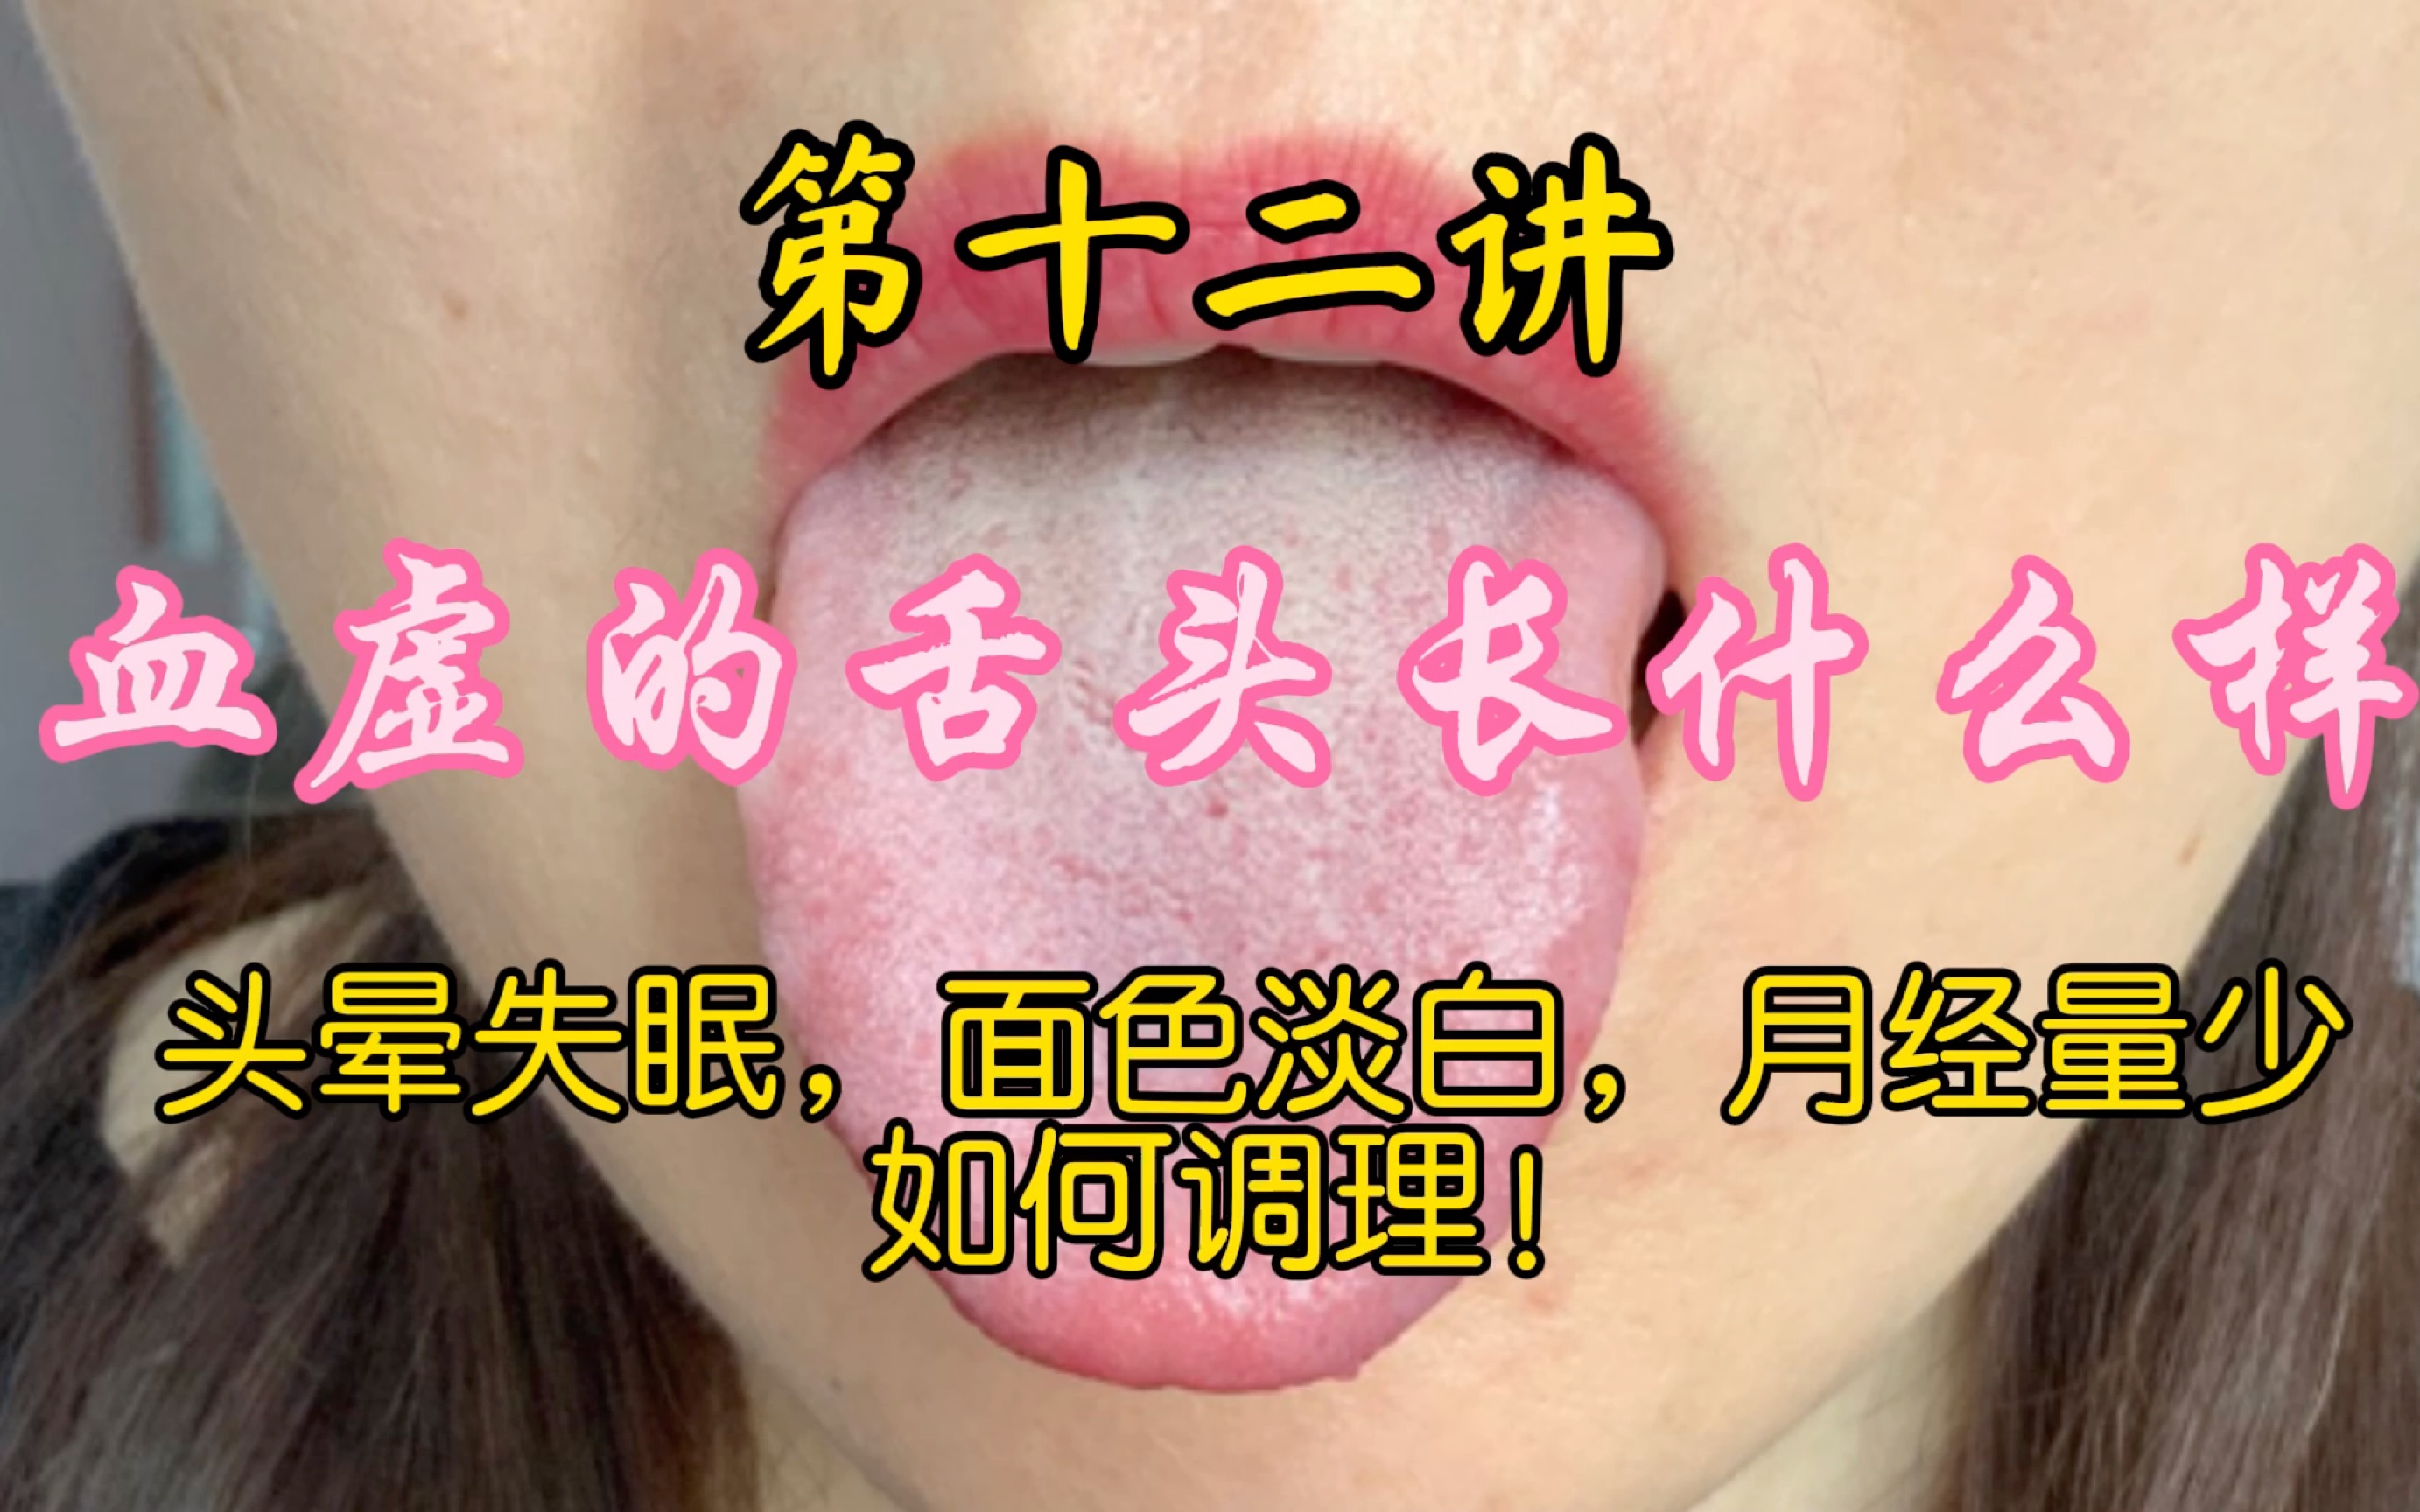 为什么人的舌头有长短之分？一般正常来说多长的舌头算比较正常？ - 知乎